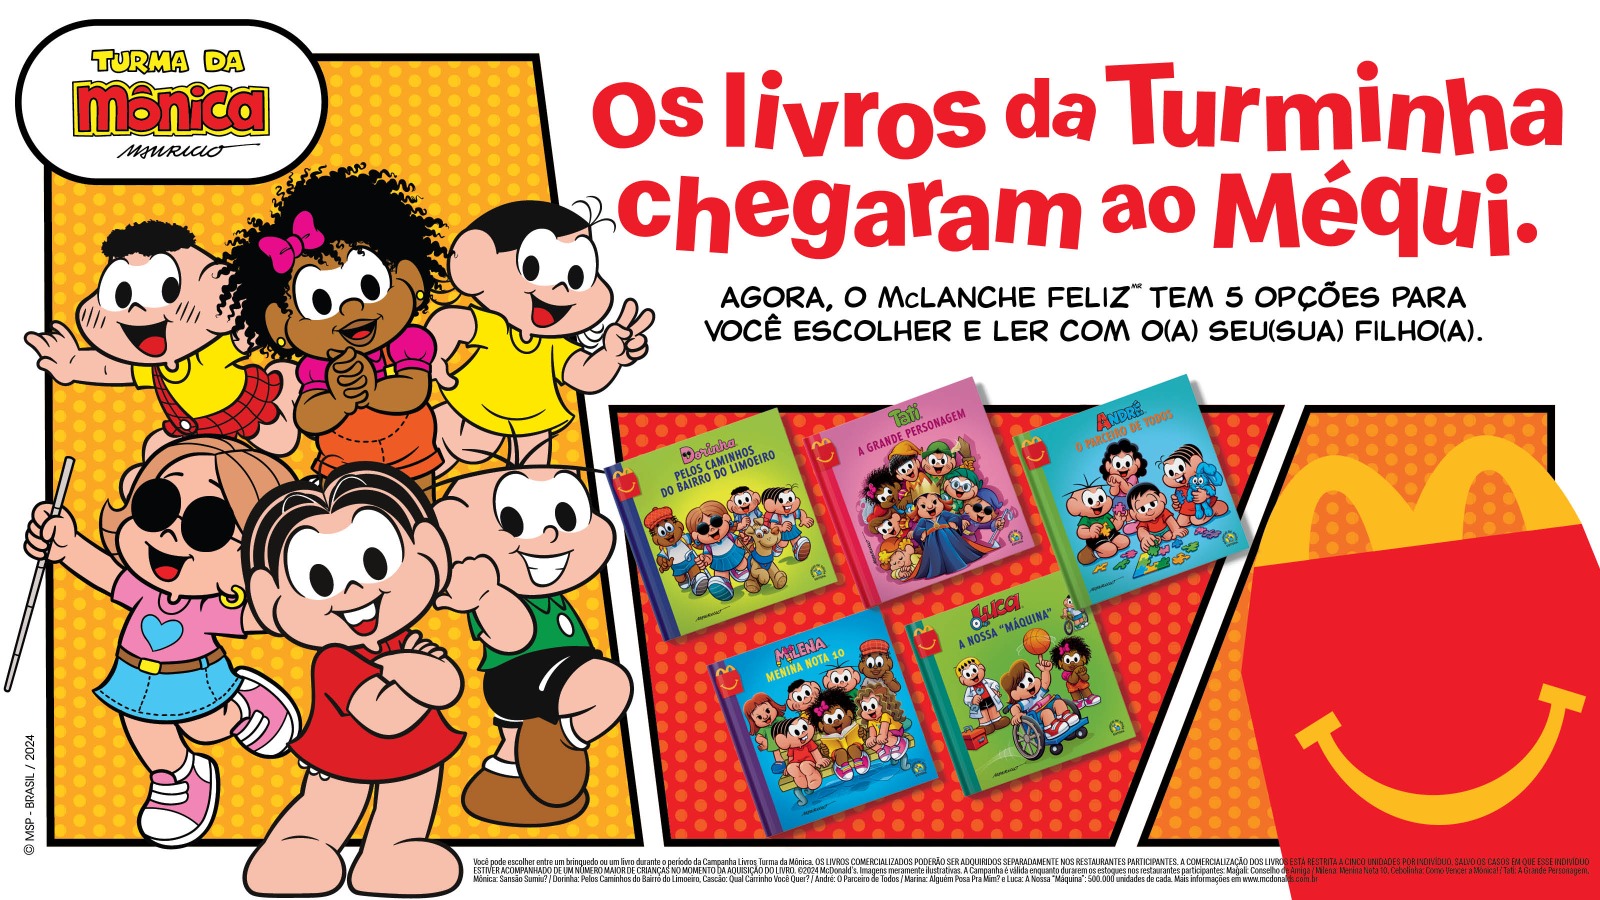 McLanche Feliz e Turma da Mônica se unem para incentivar leitura e inclusão entre crianças de todo o Brasil